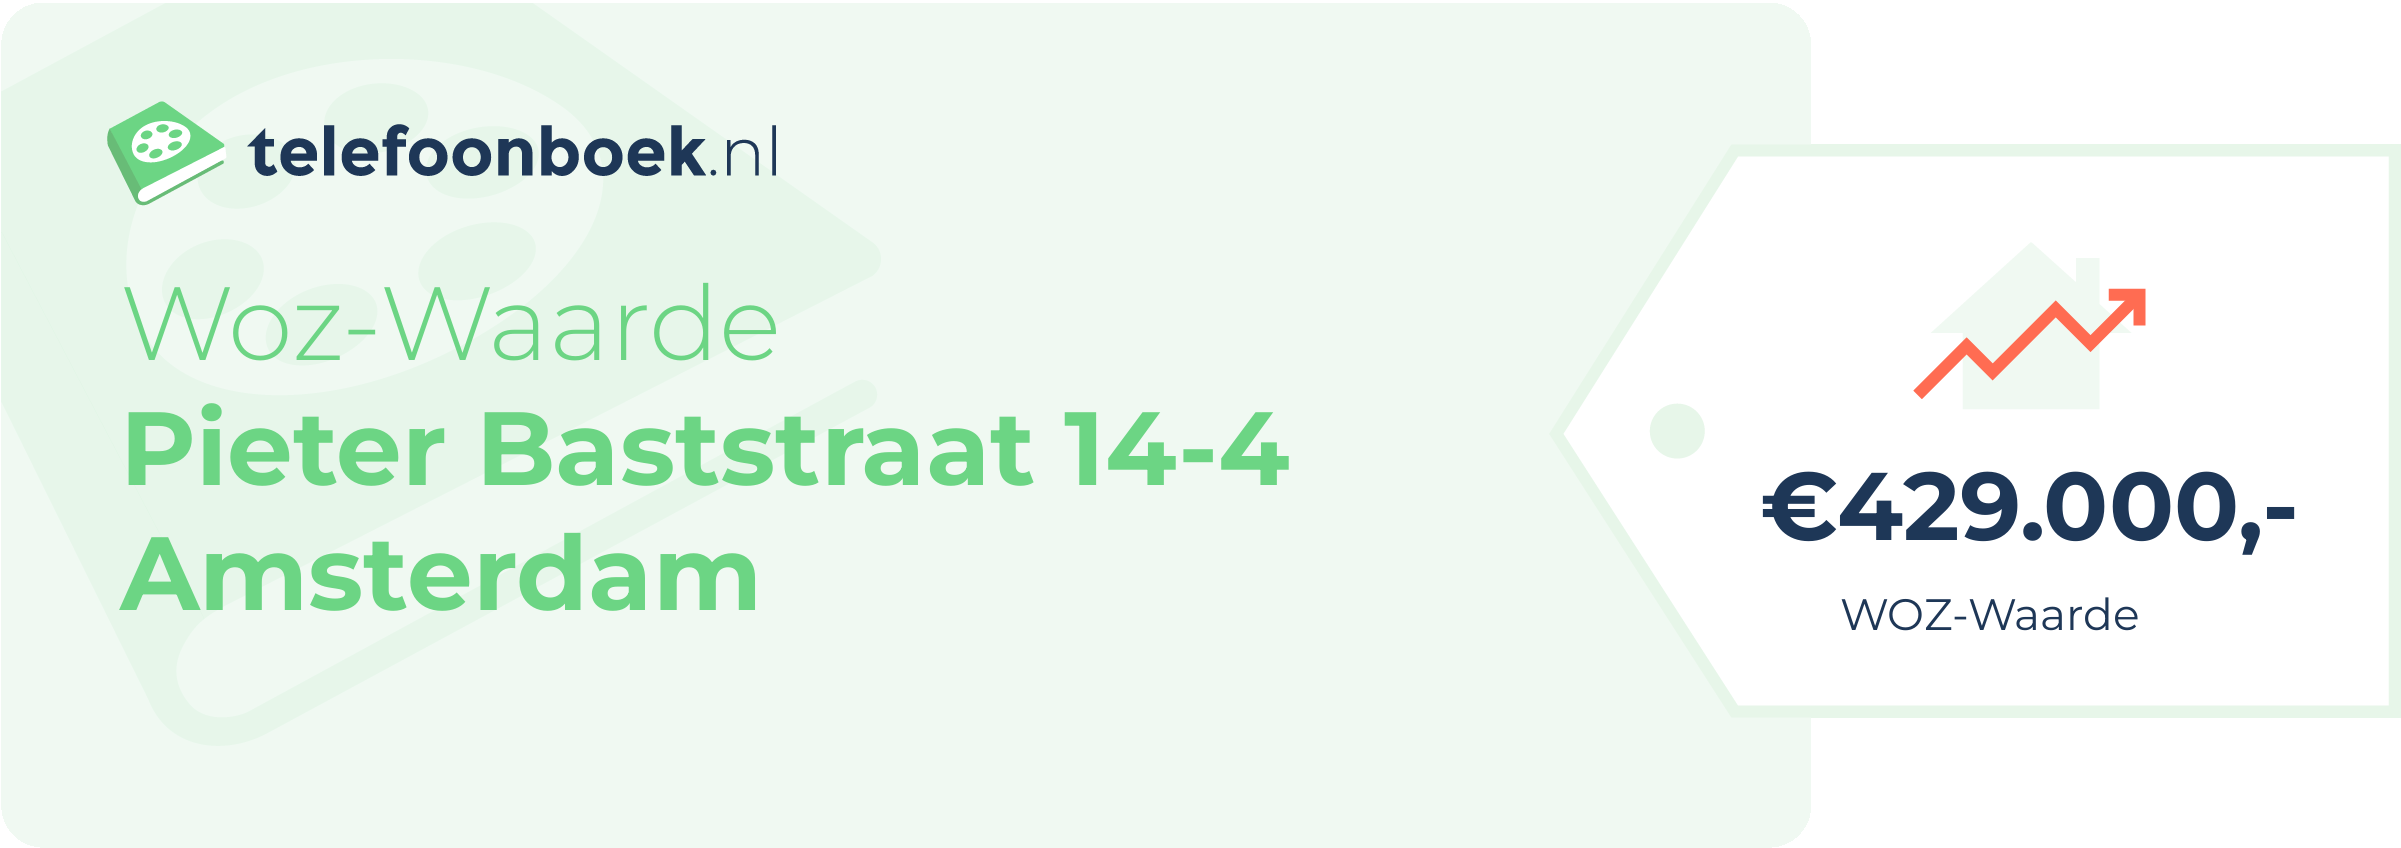 WOZ-waarde Pieter Baststraat 14-4 Amsterdam